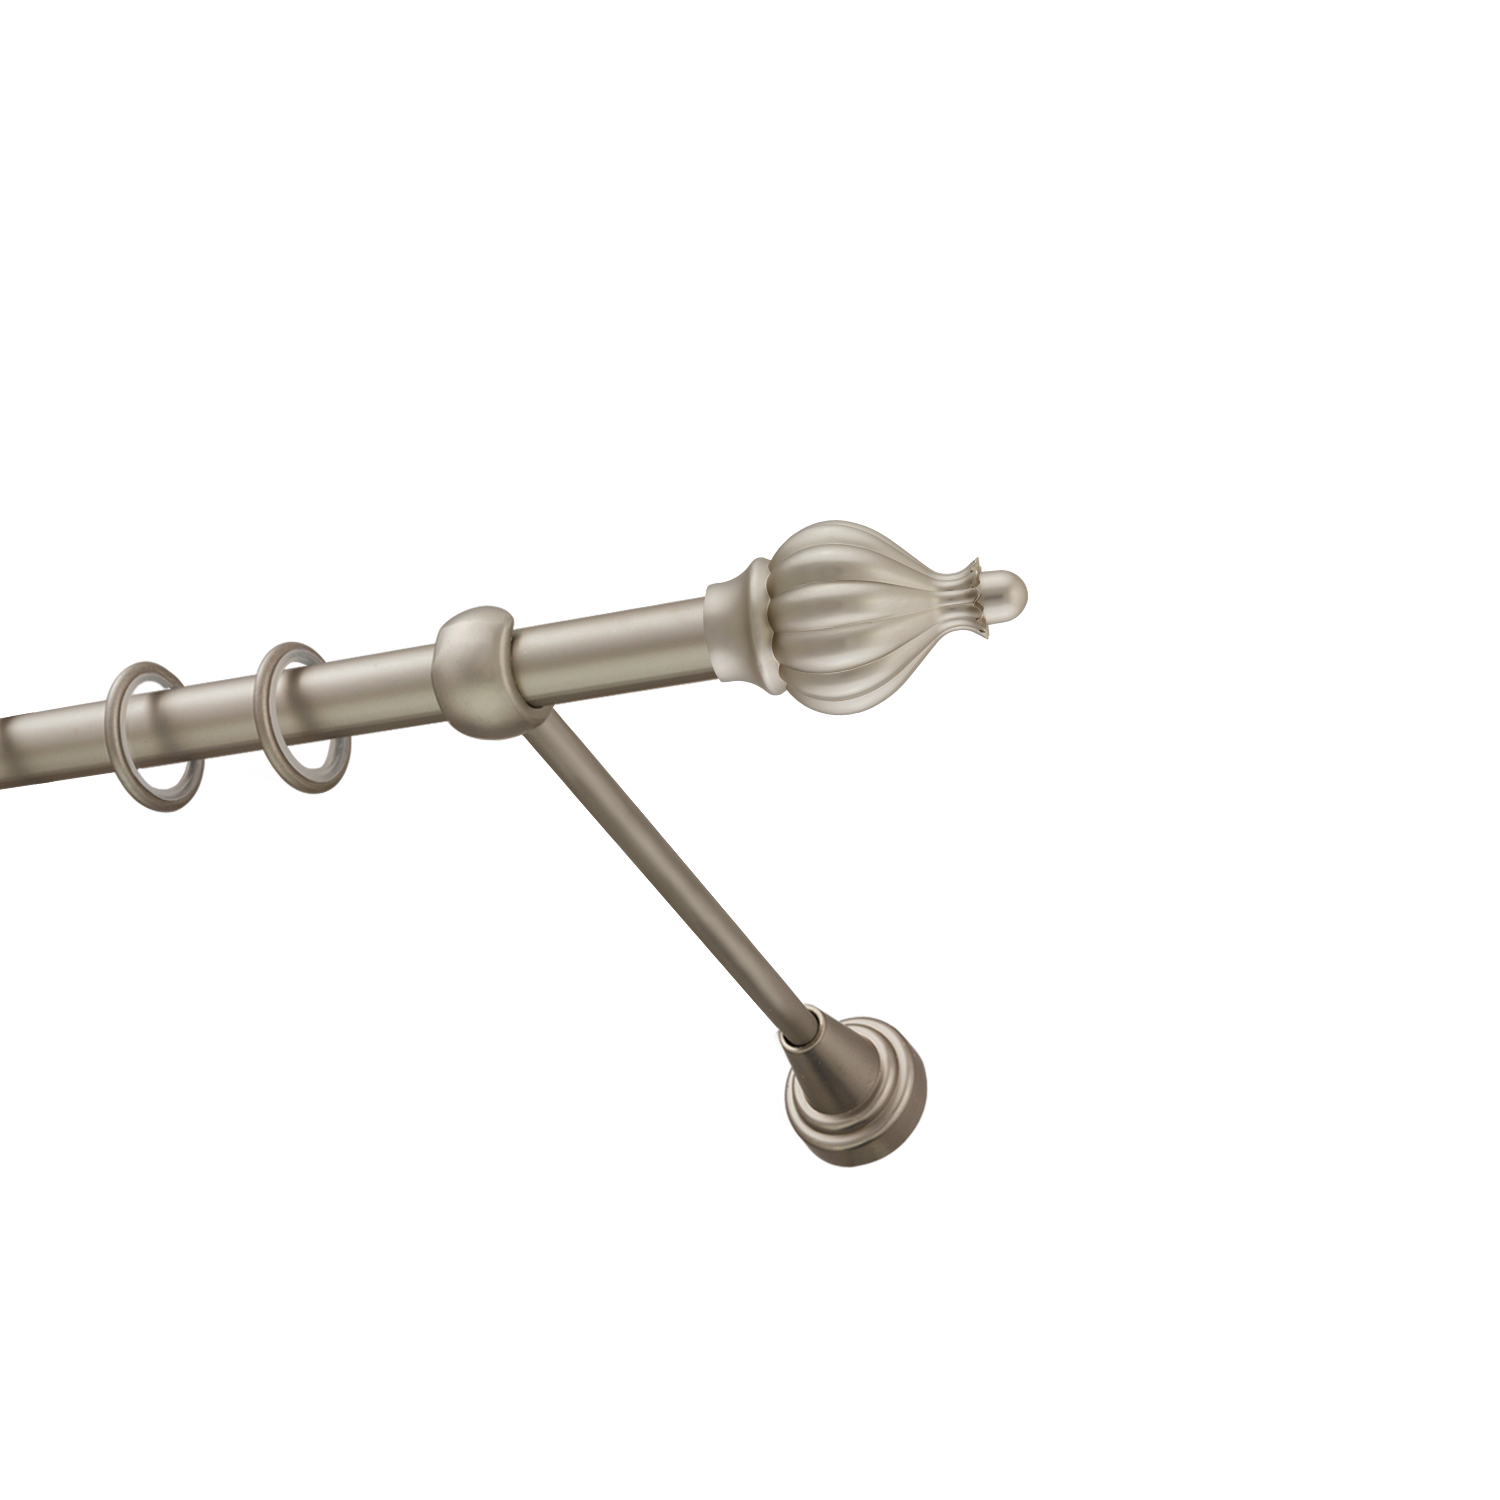 Металлический карниз для штор Афродита, однорядный 16 мм, сталь, гладкая штанга, длина 240 см - фото Wikidecor.ru